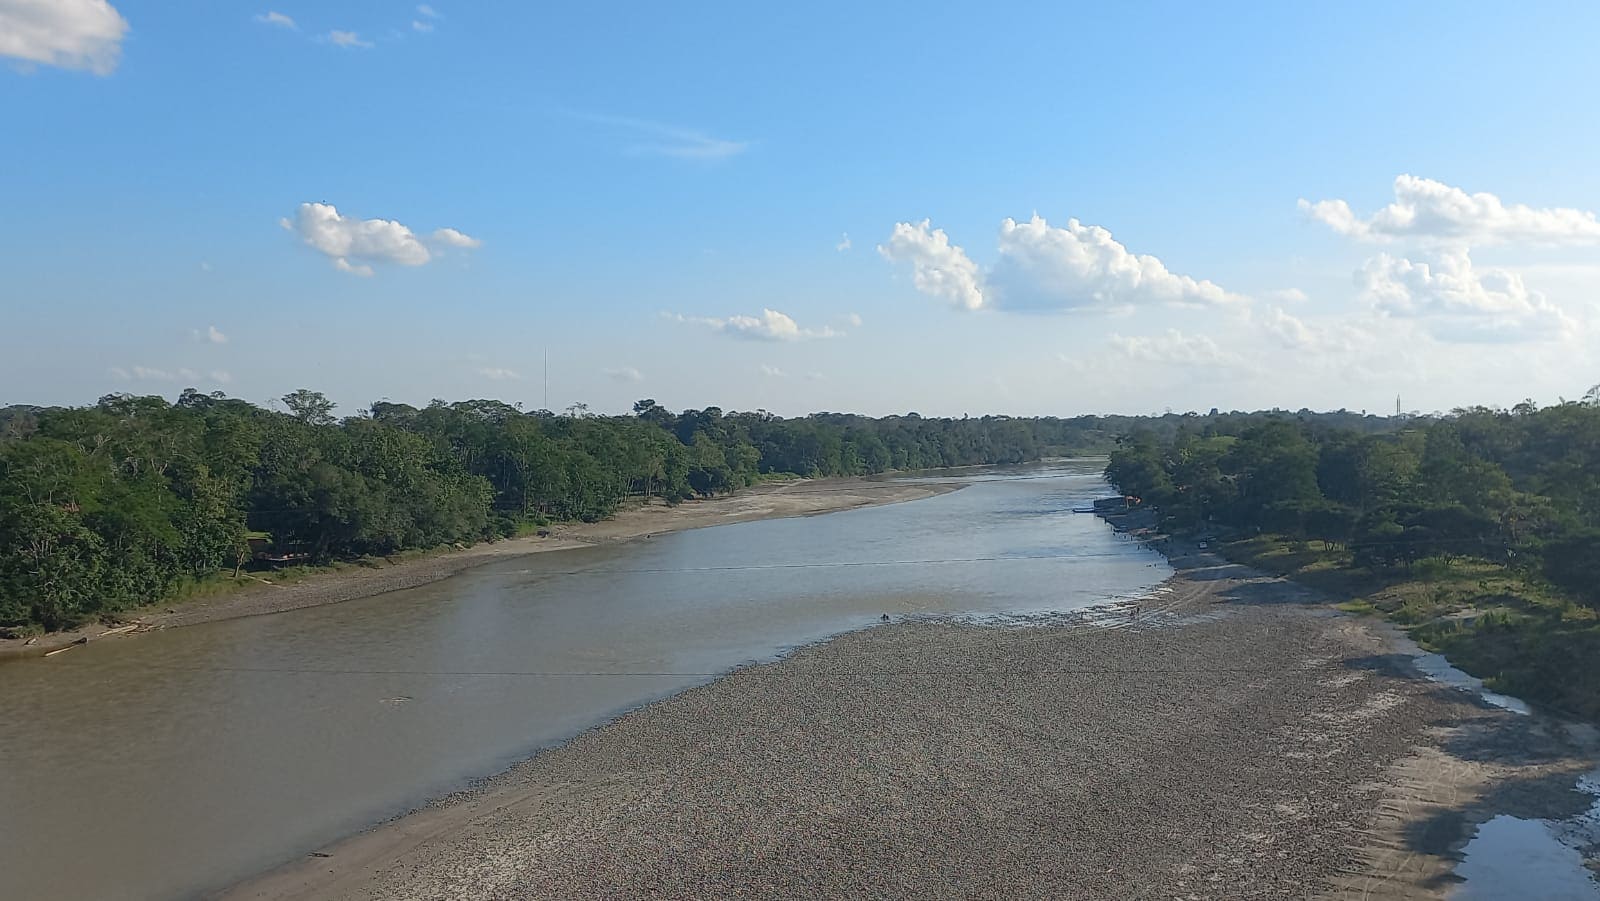 Preocupa bajo nivel de agua del río Aguarico – Periódico Independiente